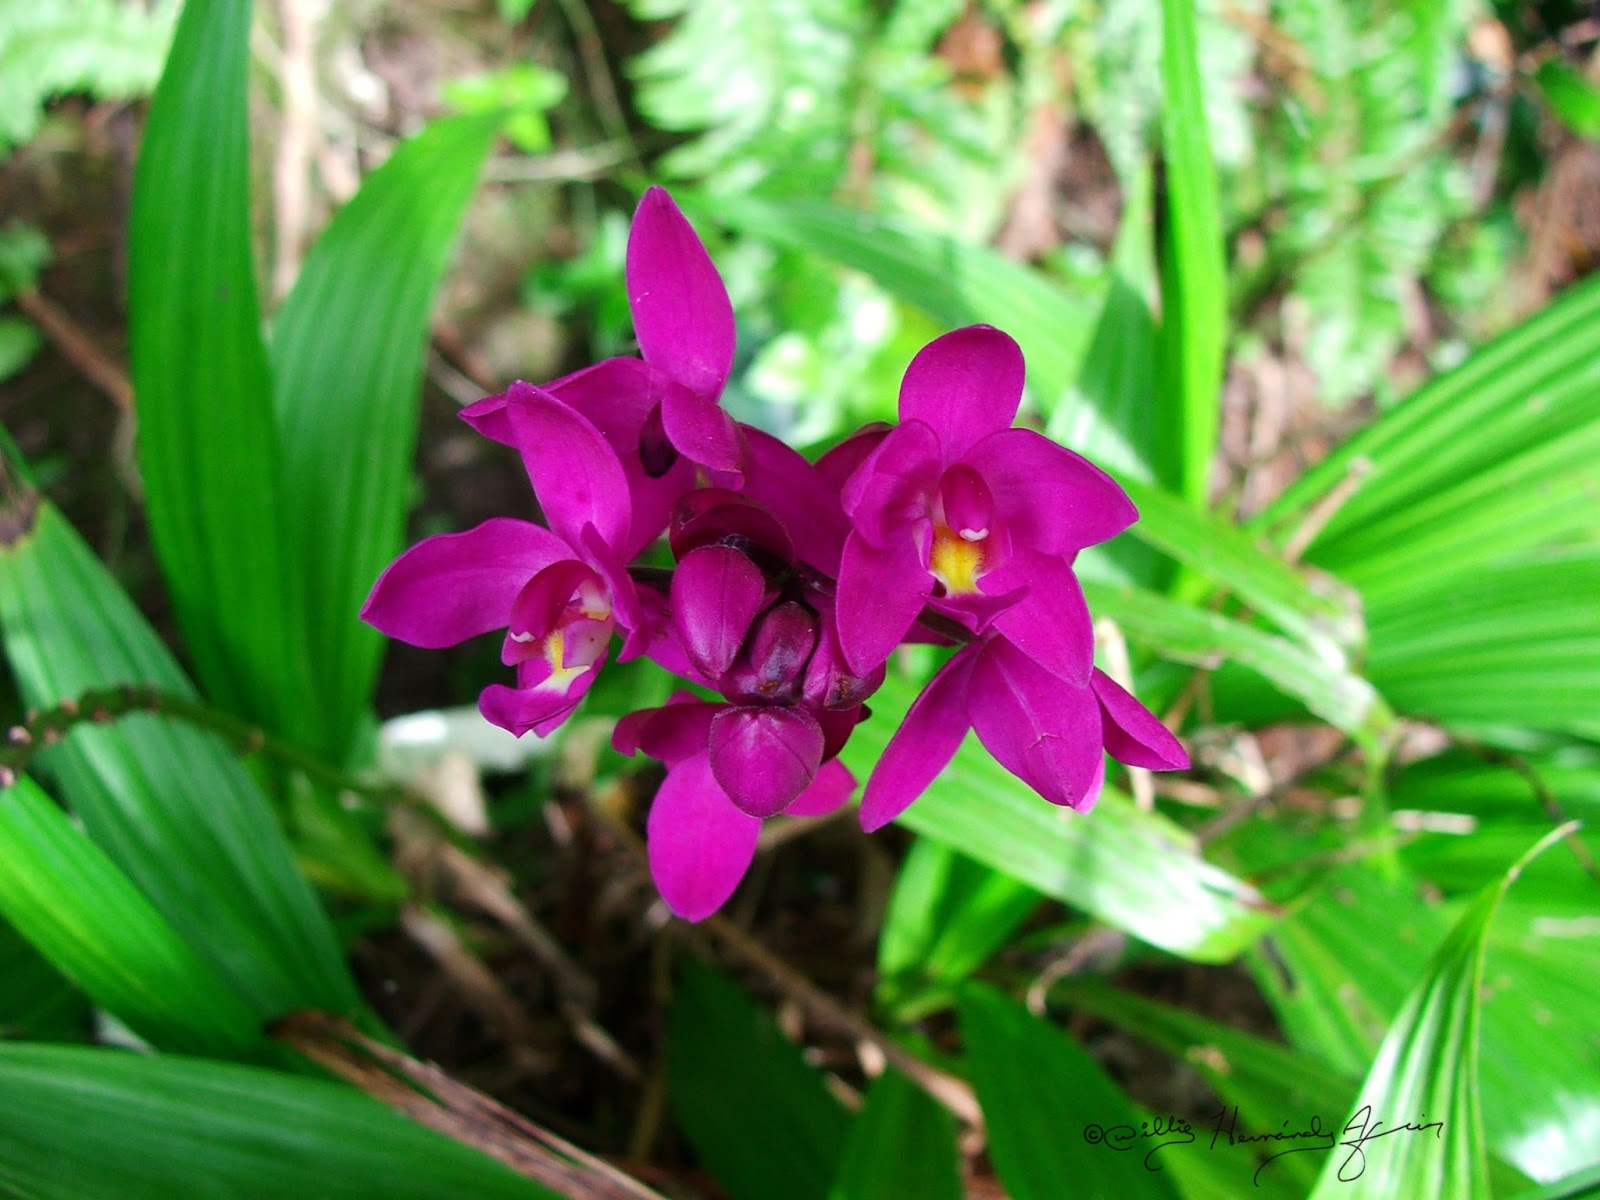 Flora de Puerto Rico Ilustrada Papo Vives: ORCHIDACEAE Spathoglottis  plcagta Orquídea filipina